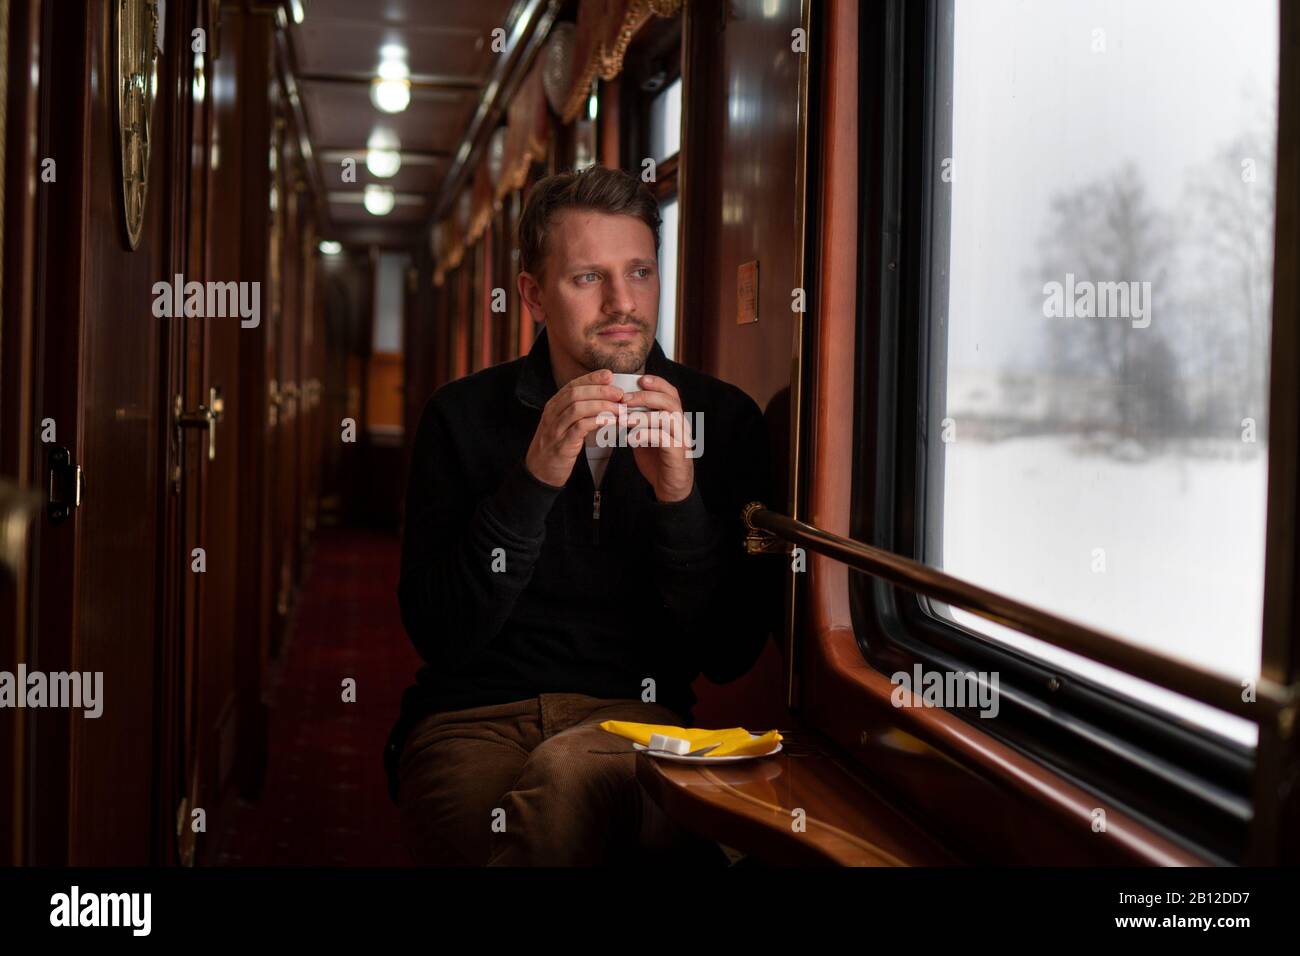 Ferrocarril Transiberiano en invierno, hombre sentado en el tren mirando por la ventana, Rusia Foto de stock